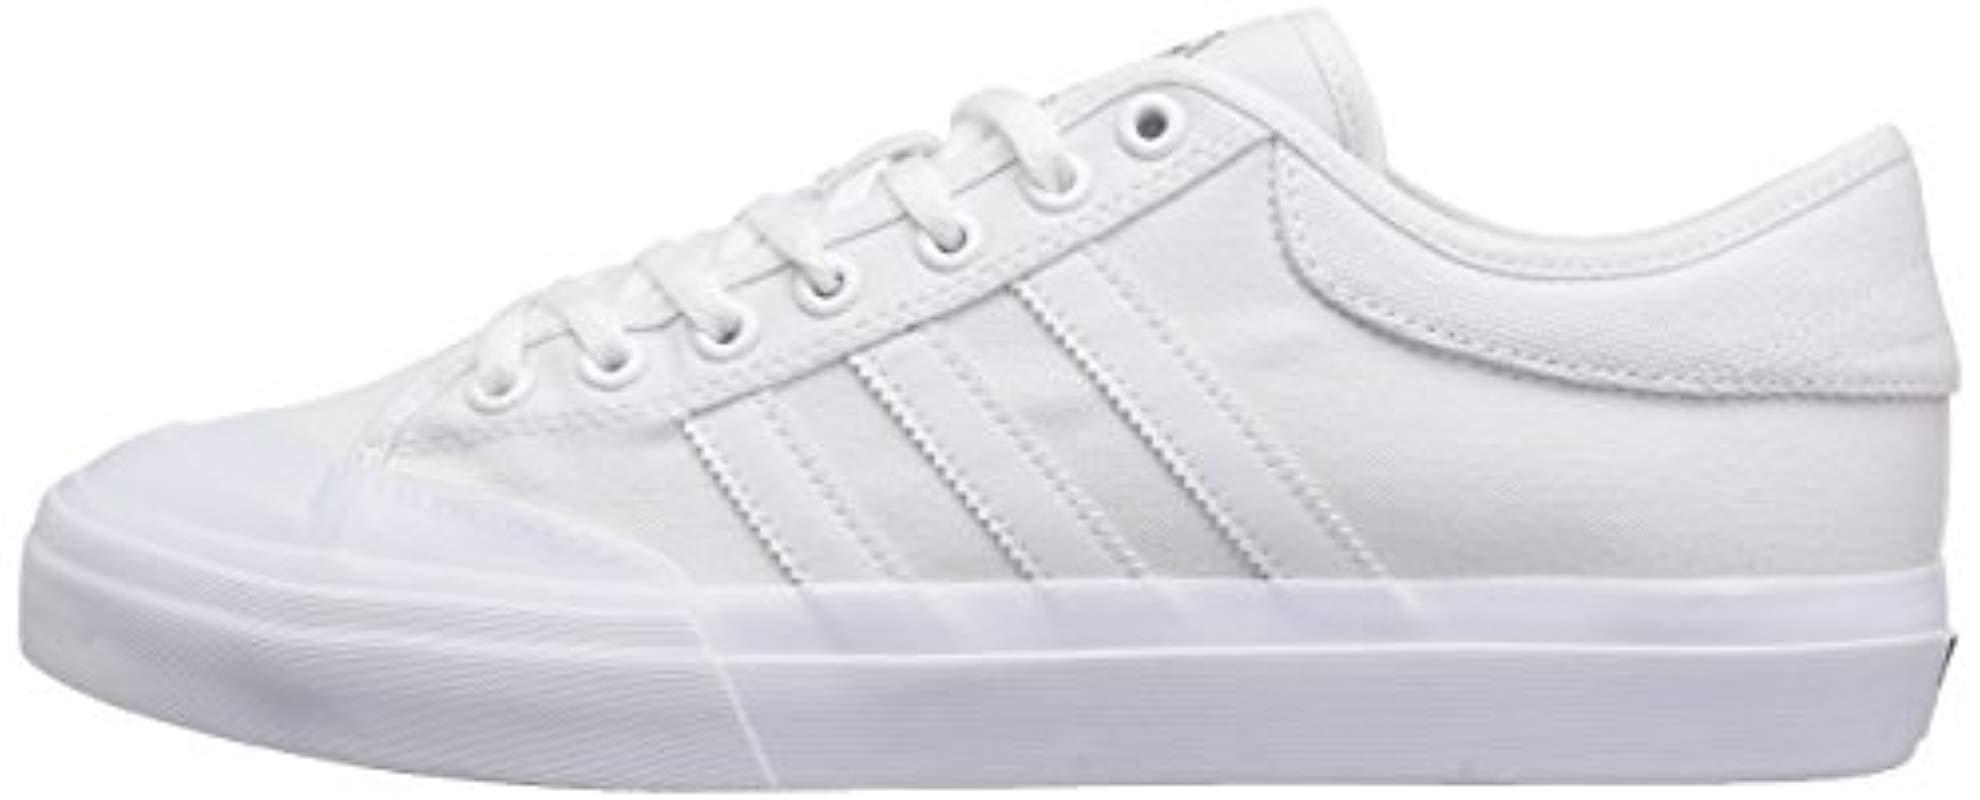 adidas Matchcourt Fashion Sneakers in White/White/White (White) for Men |  Lyst